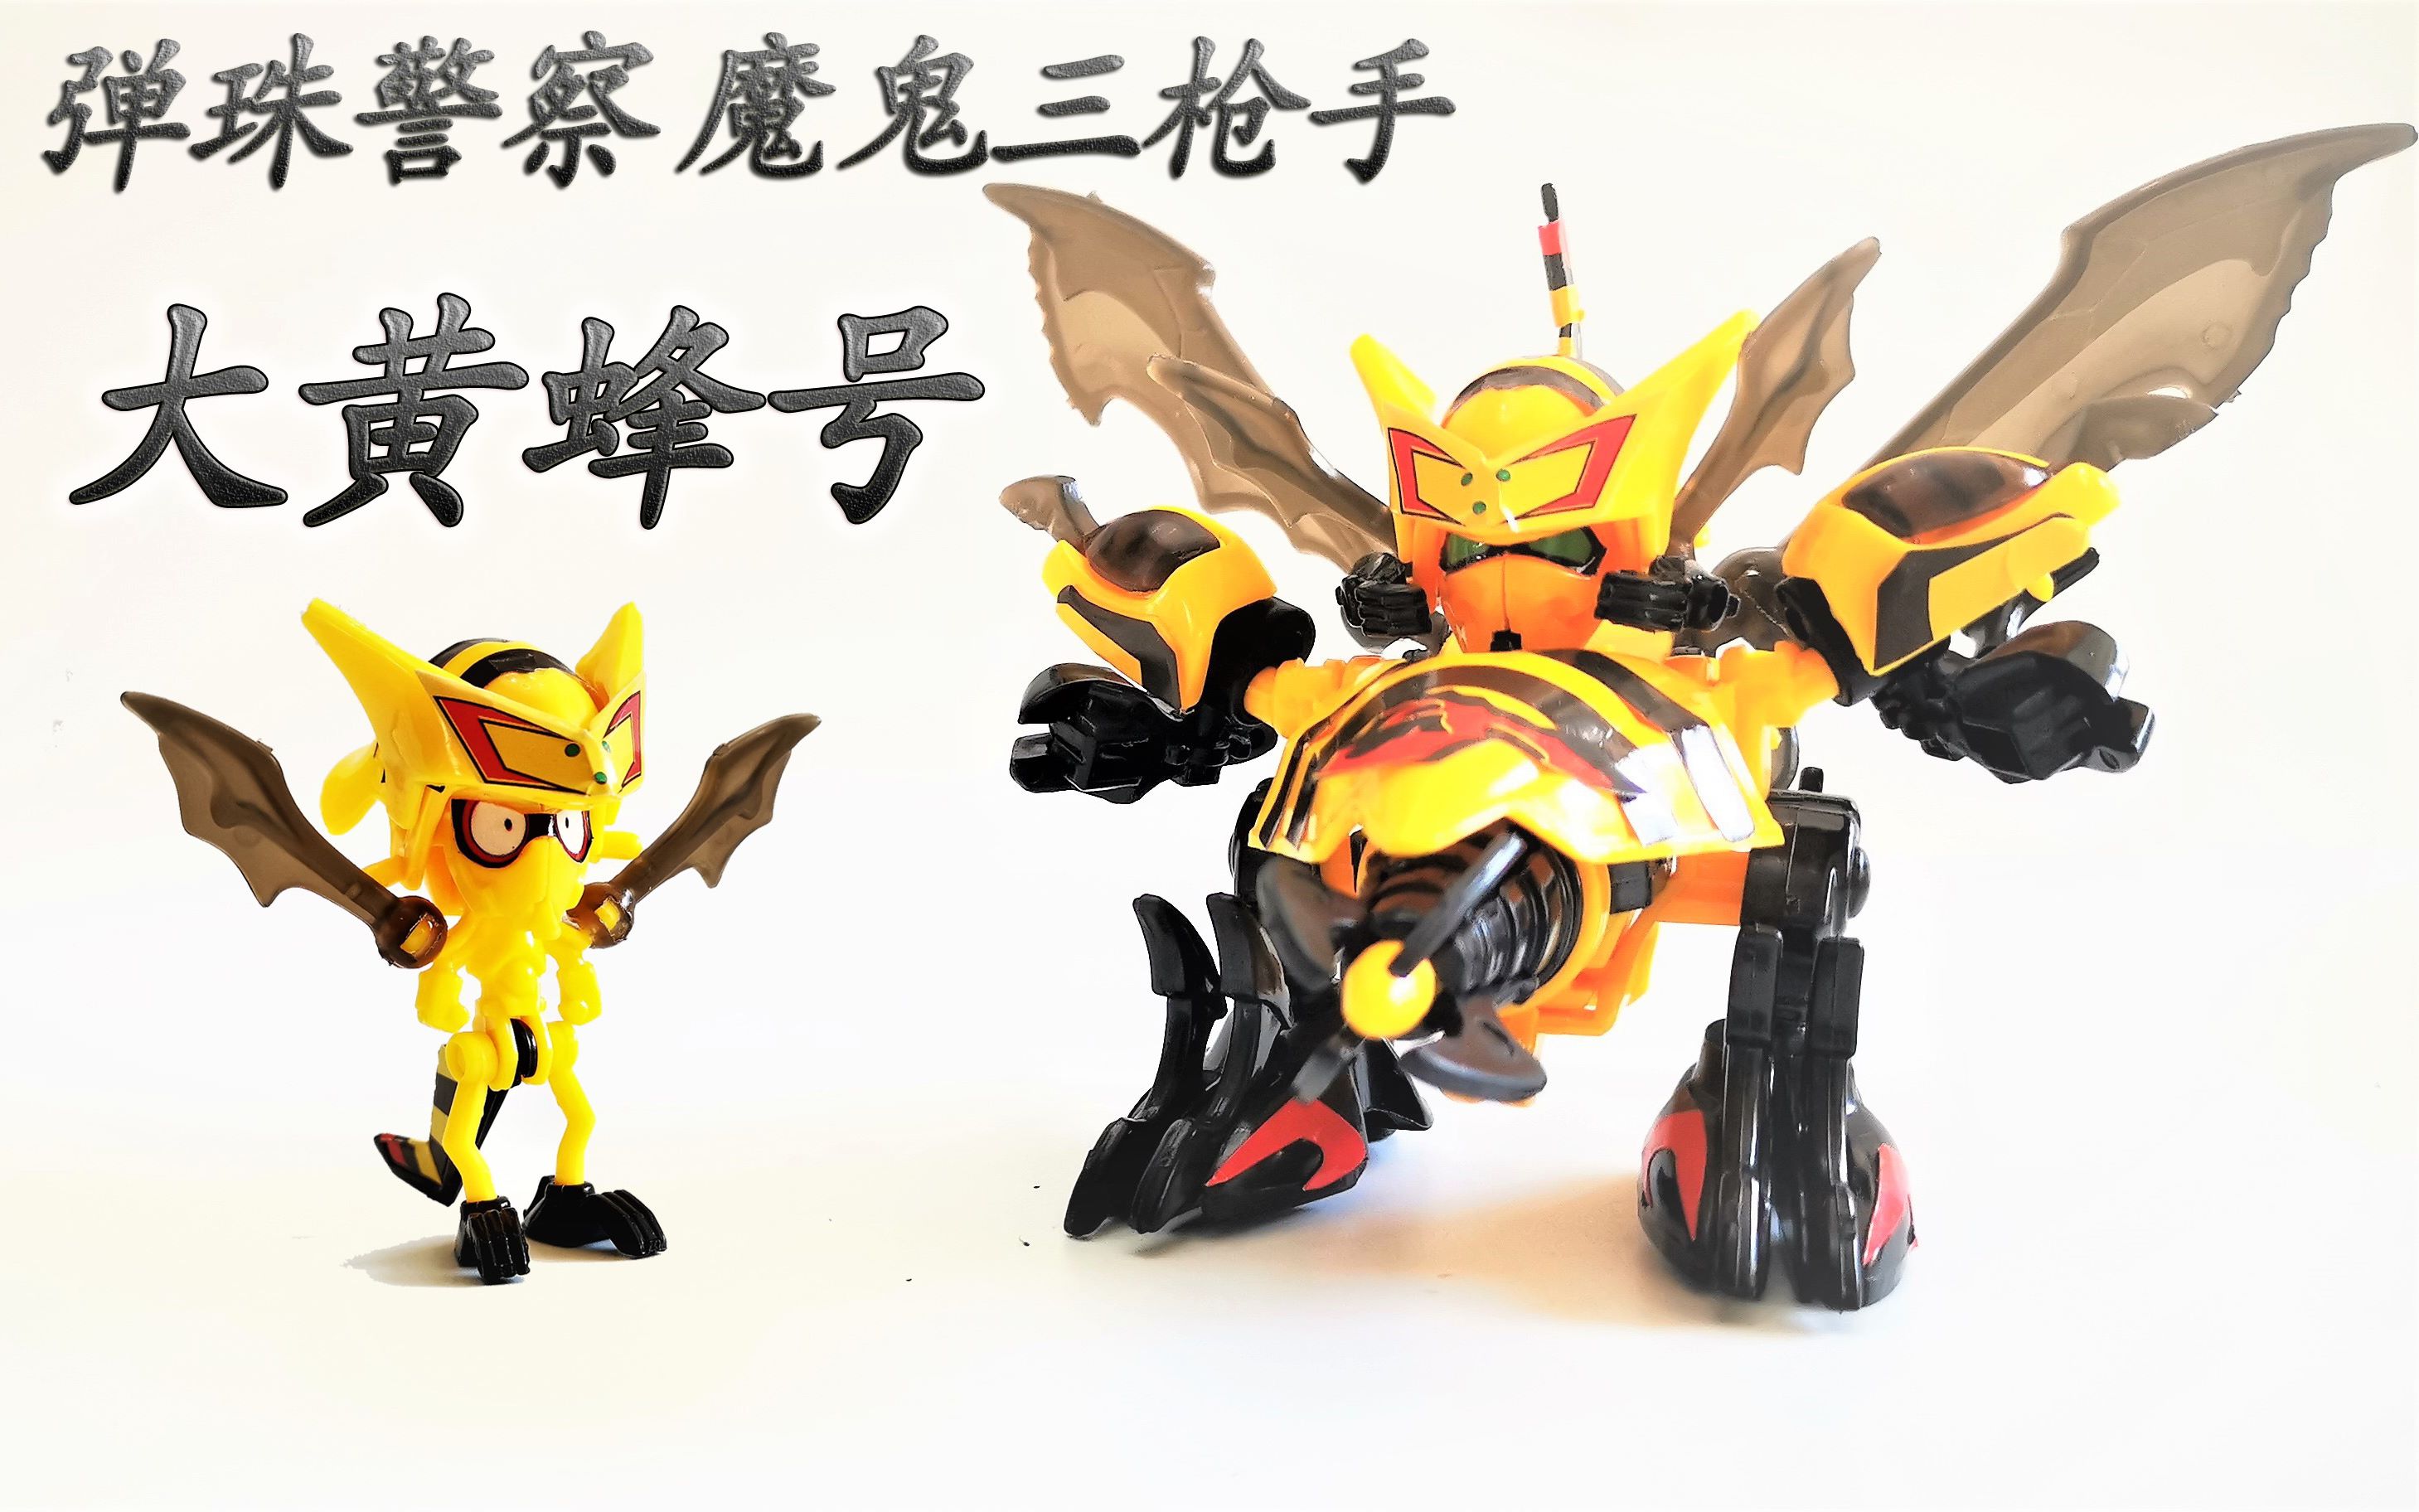 【弹珠警察】JR西日本联动 黑色水晶白战士 - 模型玩具 - Stage1st - stage1/s1 游戏动漫论坛